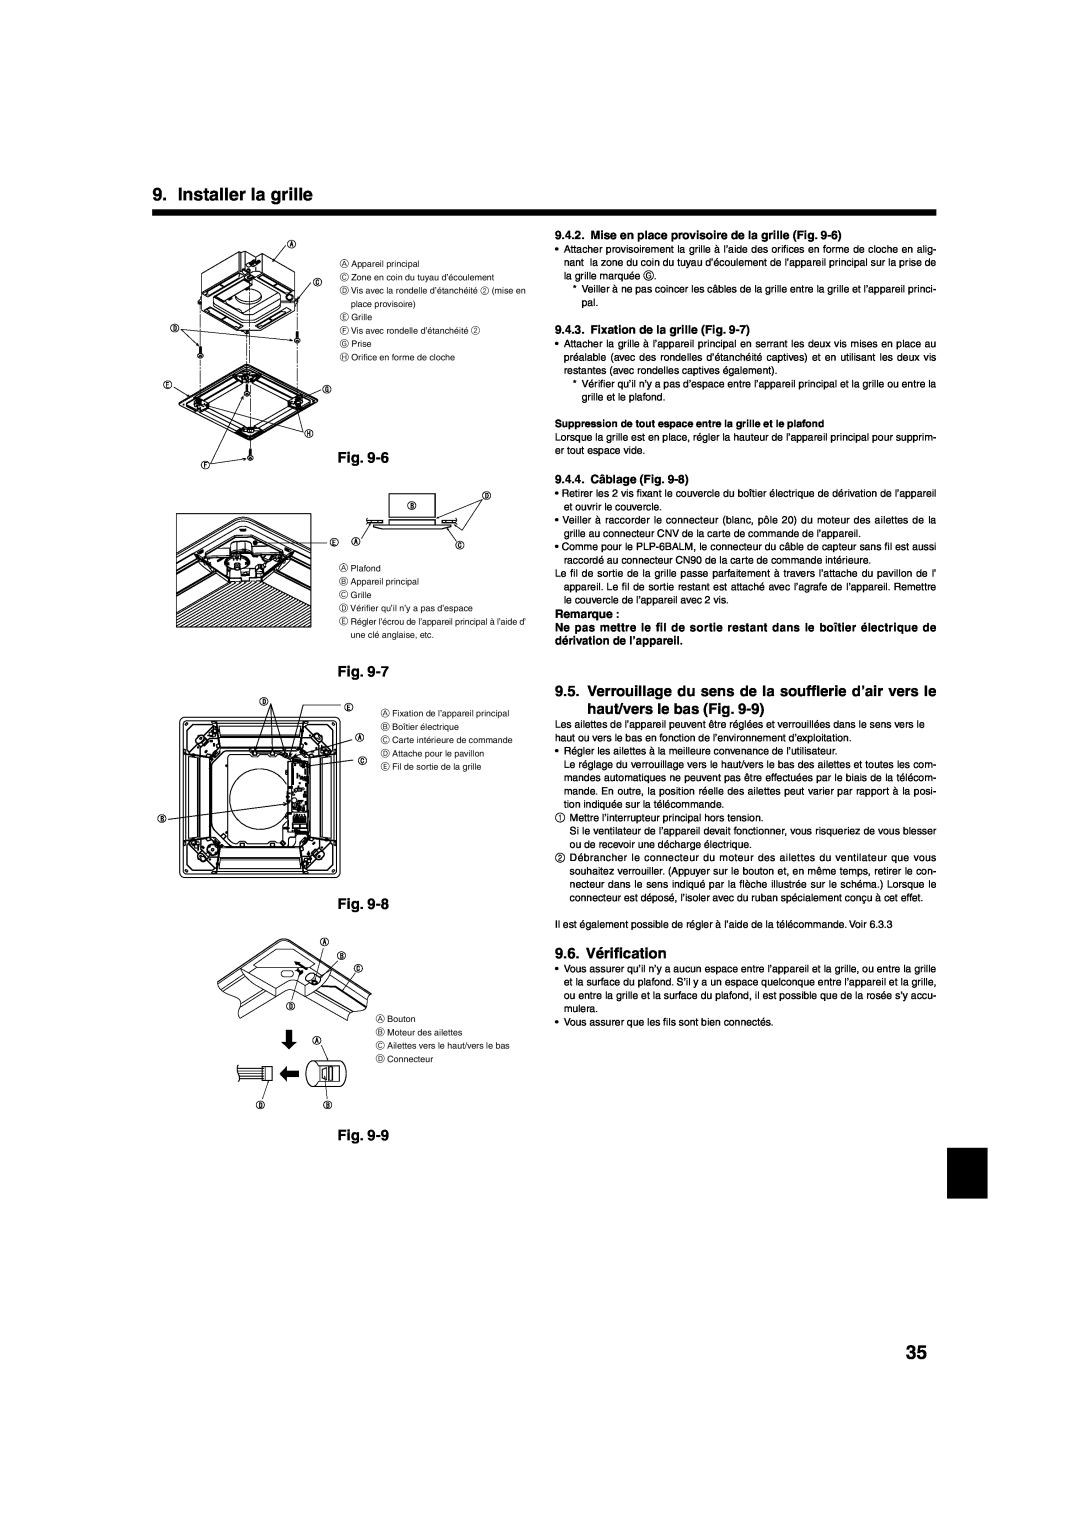 Mitsumi electronic PLA-ABA 9.6. Vériﬁcation, Installer la grille, Mise en place provisoire de la grille Fig, Remarque 